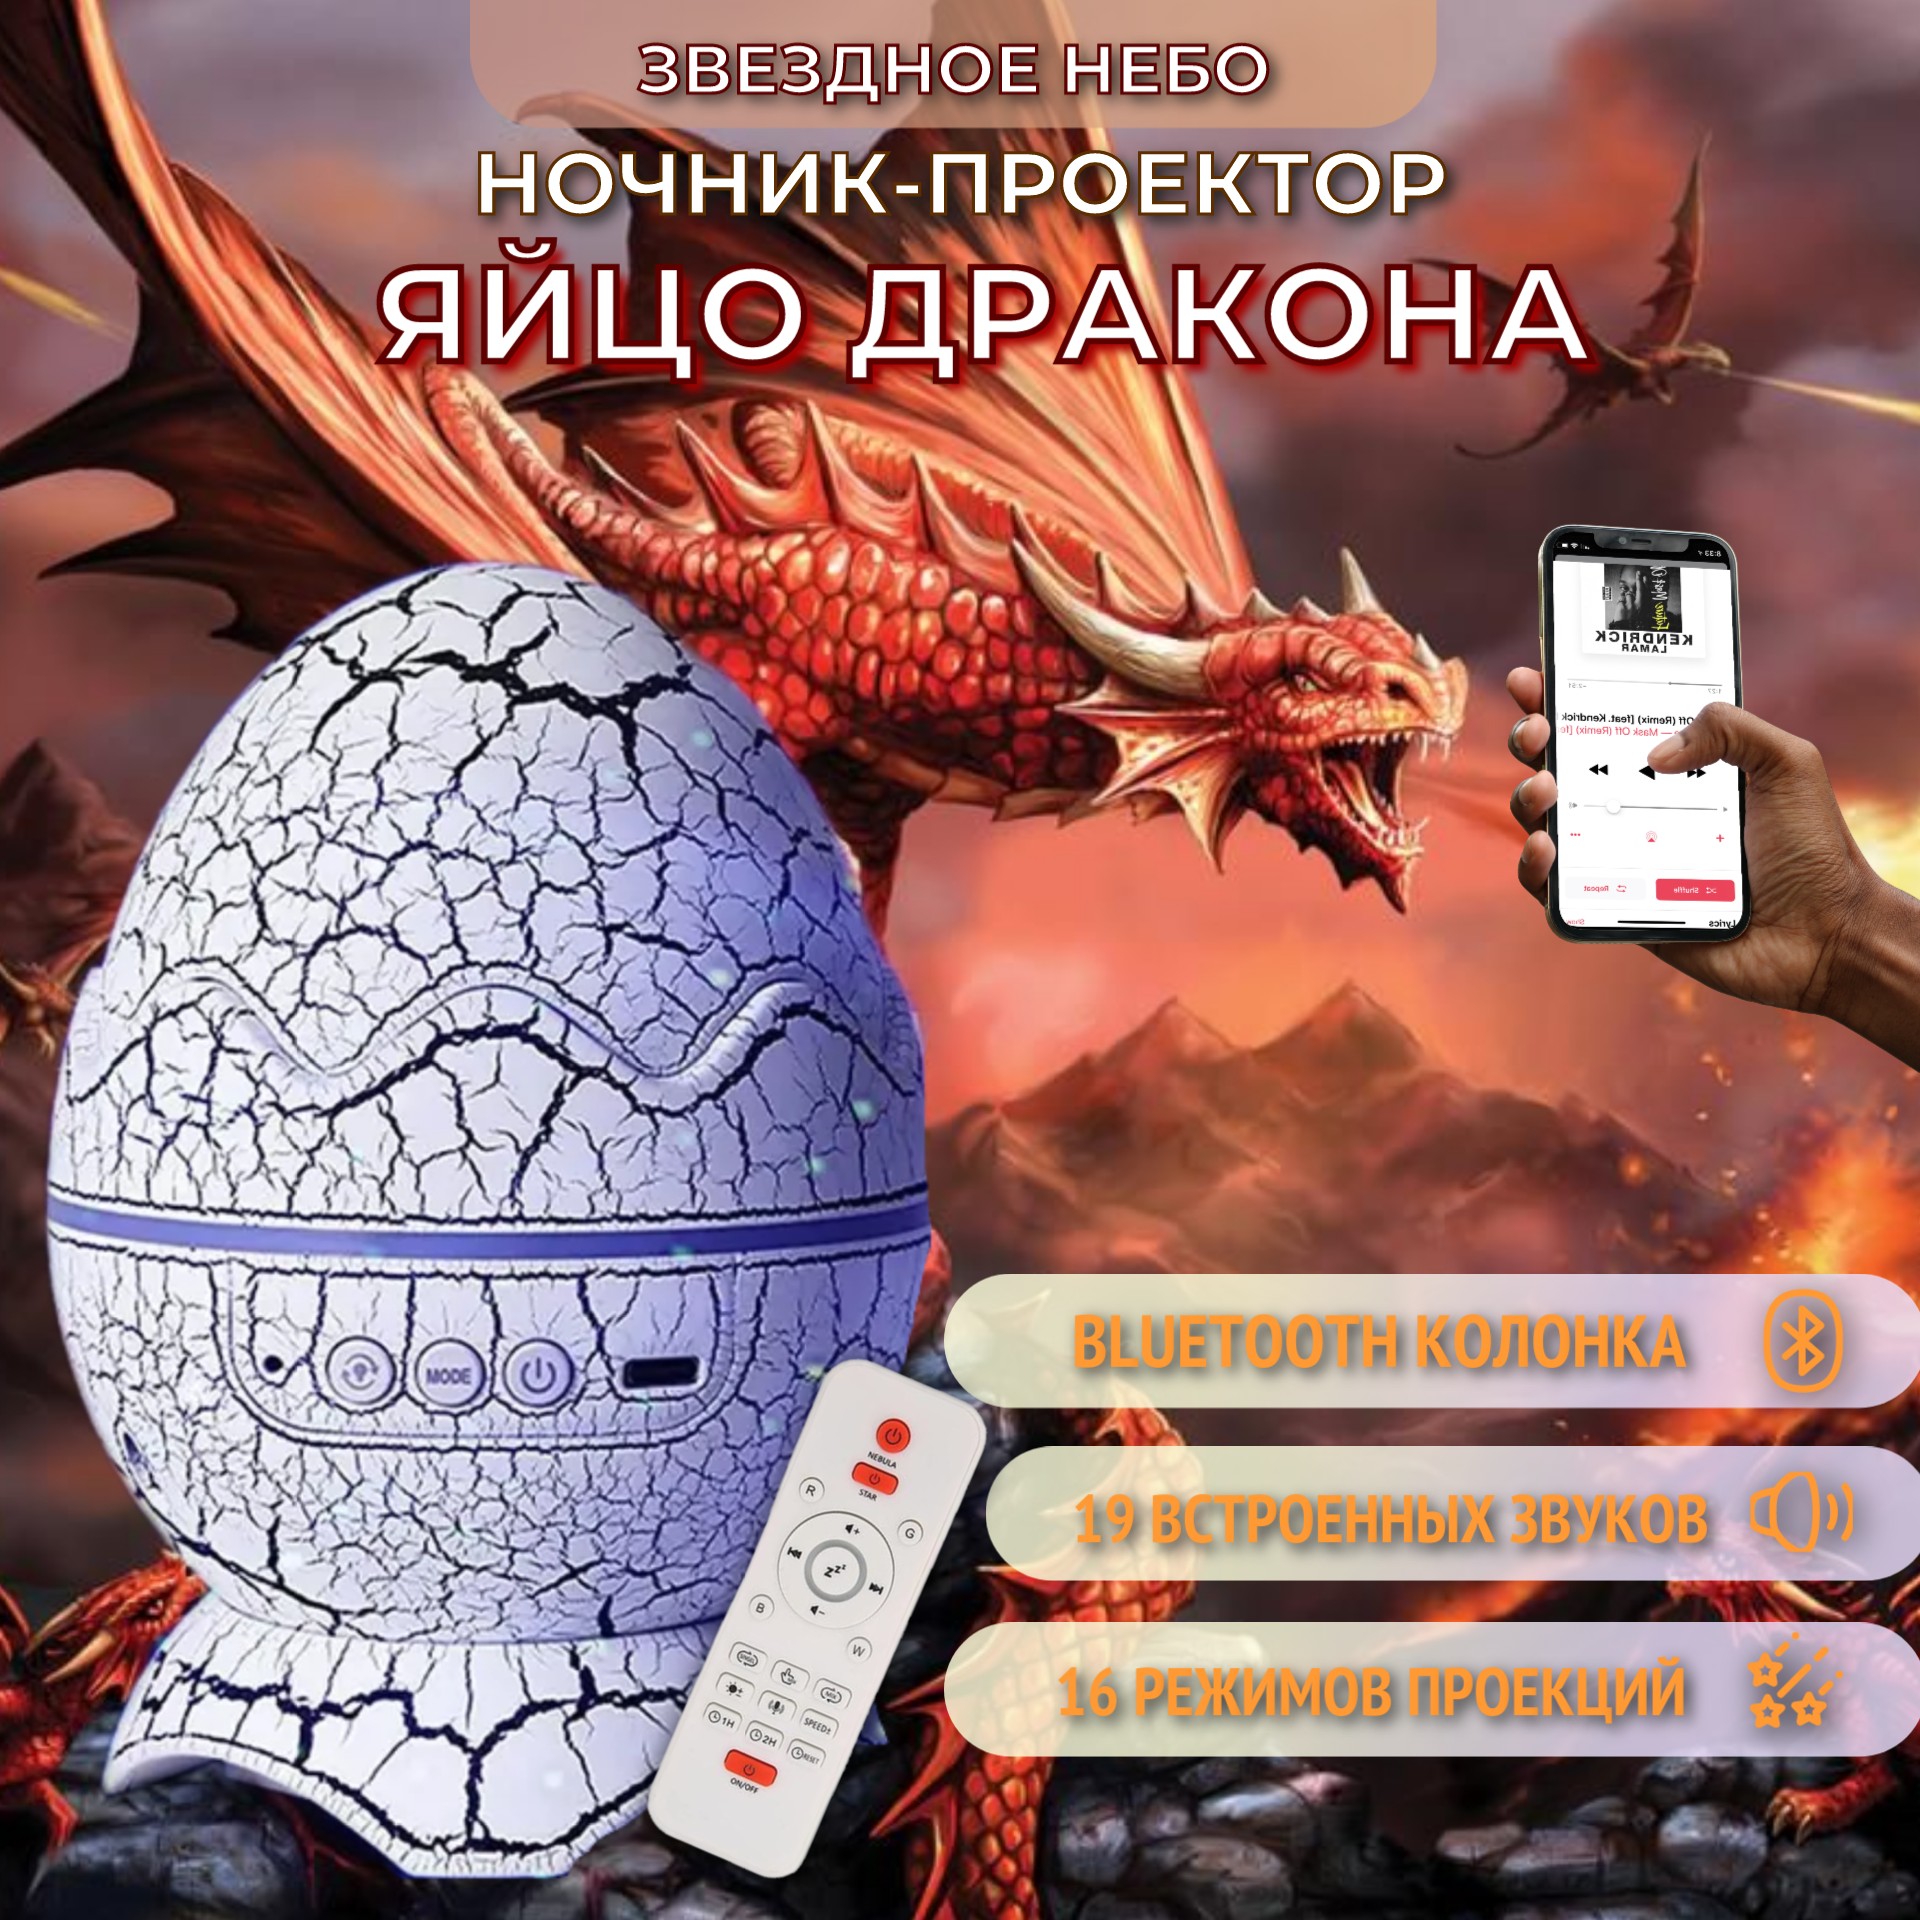 Ночник-проектор Торговая федерация Яйцо дракона Bluetooth, белый, 3кн ночник проектор bashexpo яйцо дракона с bluetooth ной 3кн